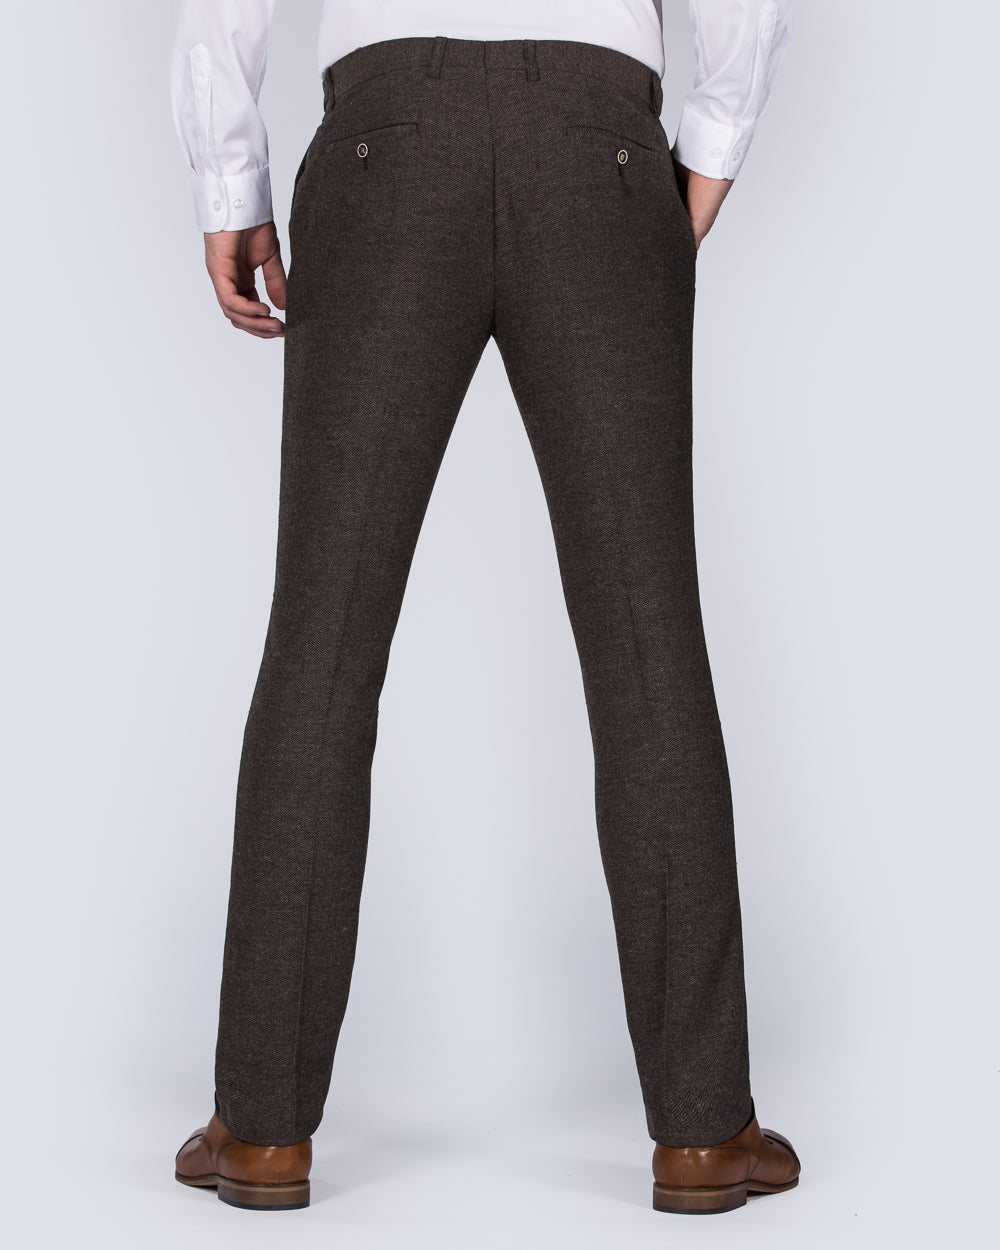 Skopes Jude Skinny Tall Tweed Suit Trousers (brown herringbone)